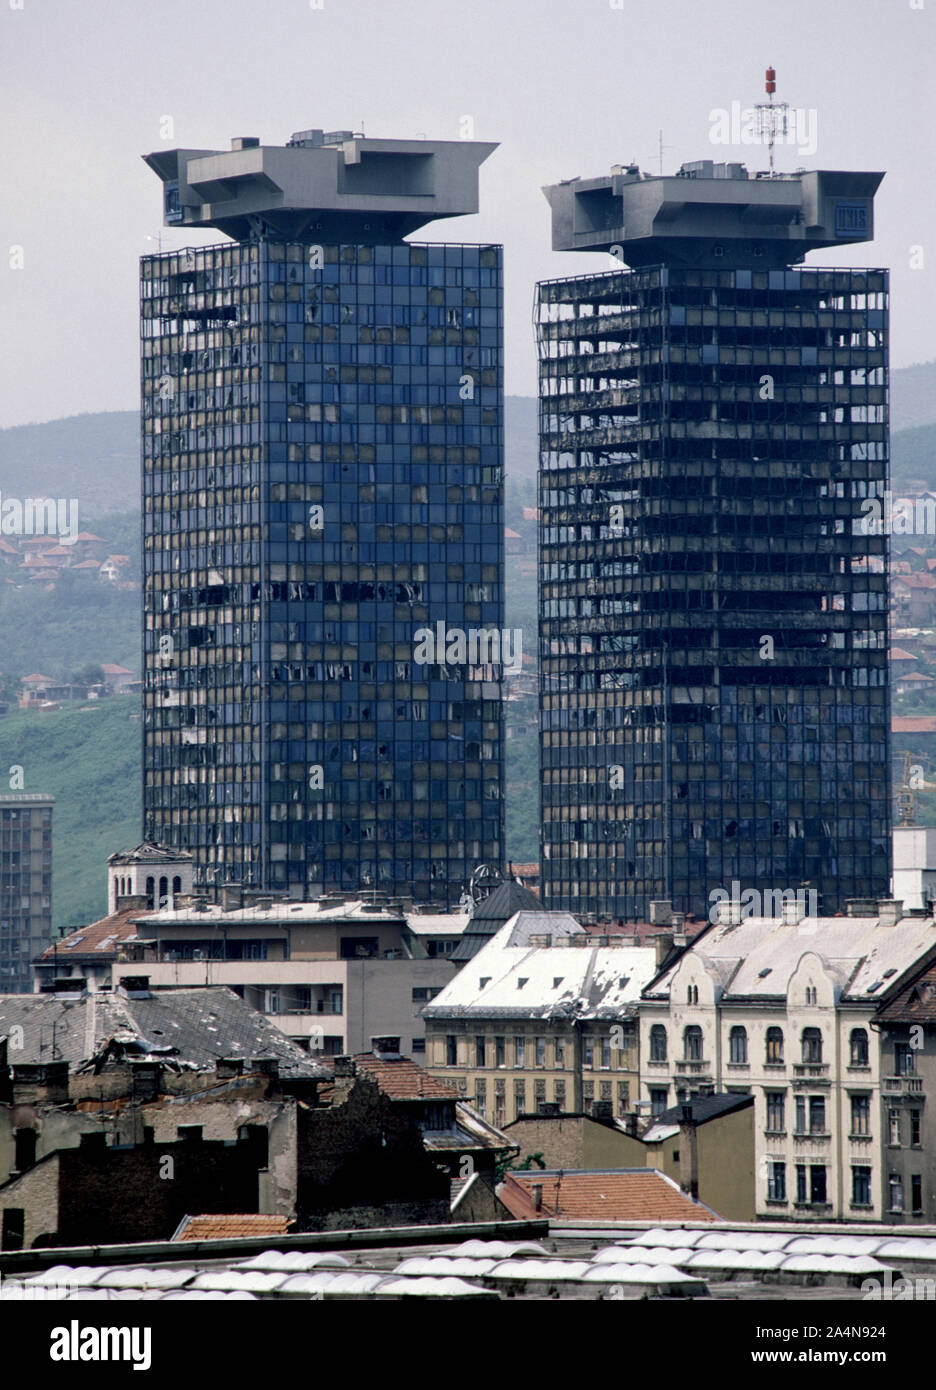 5 juin 1993 pendant le siège de Sarajevo : les lits jumeaux Unis  endommagées par la guerre Stolačka Tours vu de rue, au sud-est. Construit  dans les années 1980, ils ont été